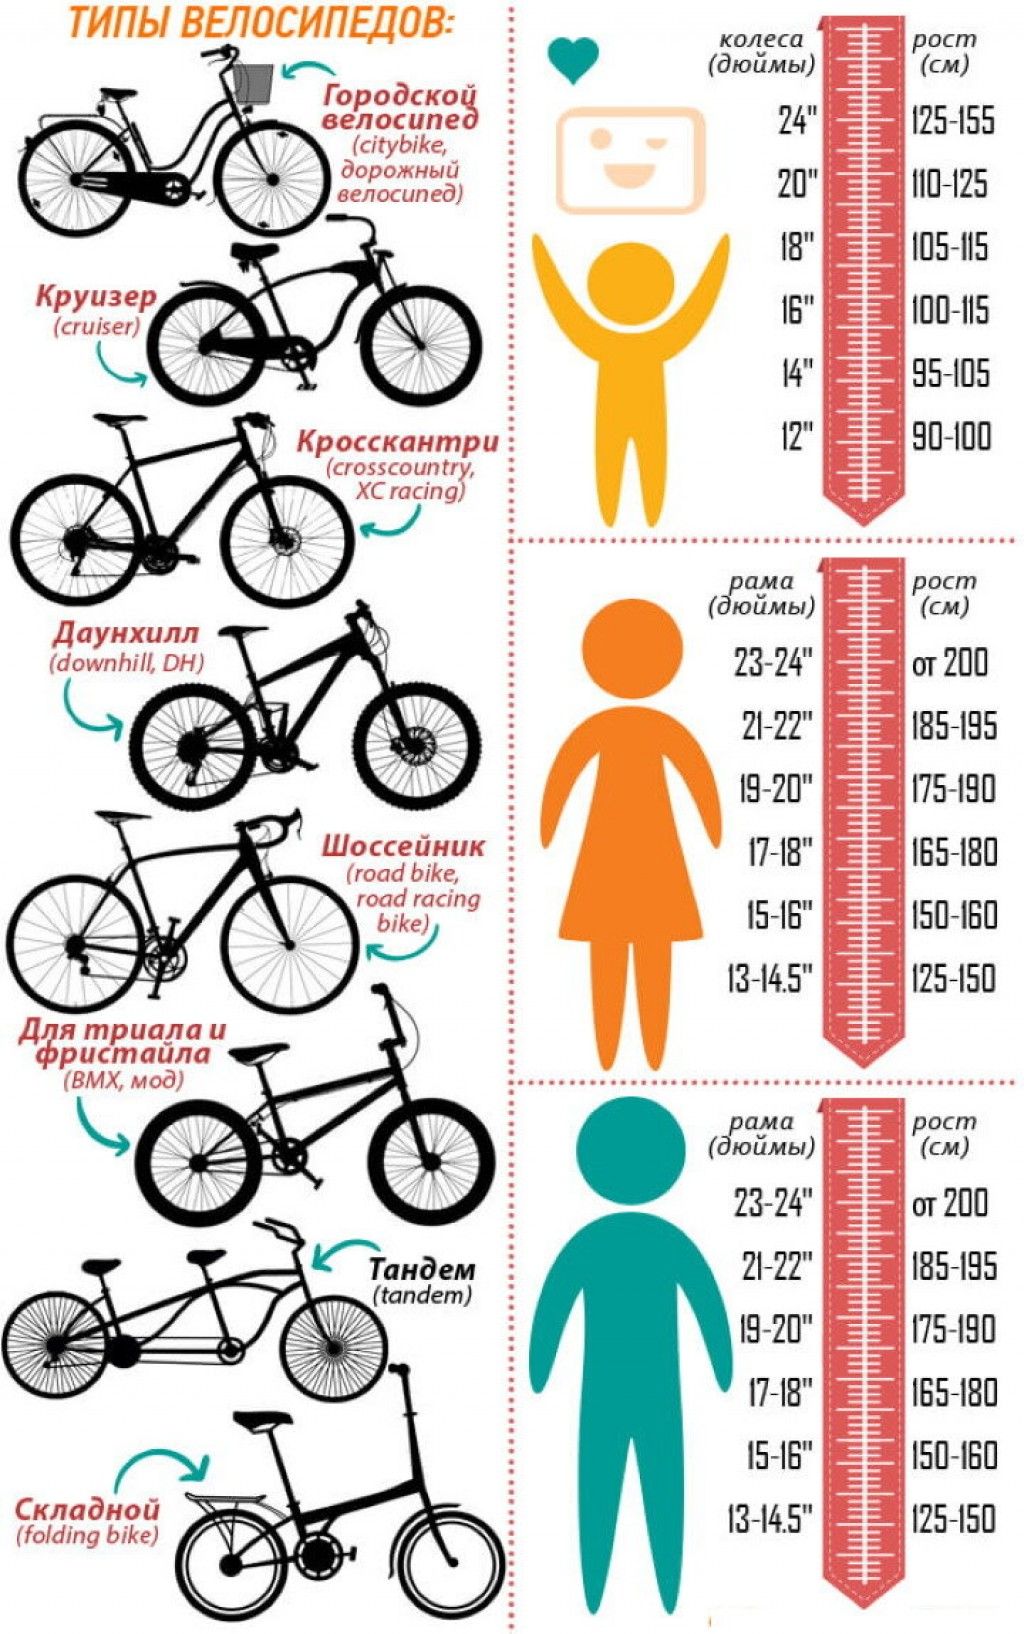 Как выбрать раму велосипеда по росту. Как подобрать размер рамы велосипеда по росту ребенка. Как выбрать размер рамы велосипеда по росту ребенка. Размер рамы и колес велосипеда по росту таблица для детей. Размер рамы у велосипеда с 26 колесами.